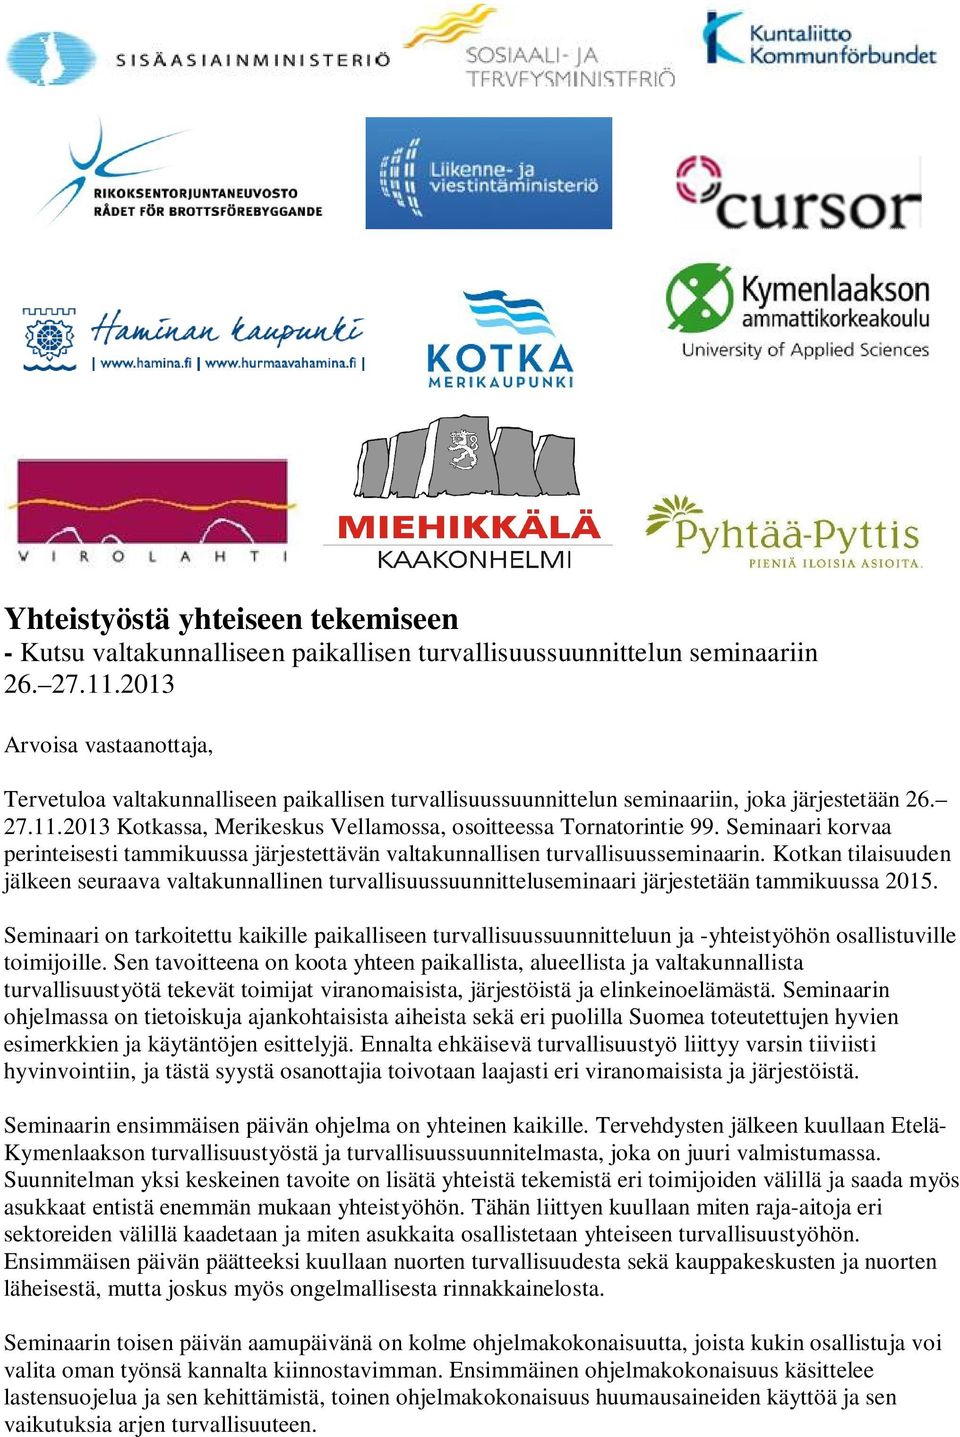 2013 Kotkassa, Merikeskus Vellamossa, osoitteessa Tornatorintie 99. Seminaari korvaa perinteisesti tammikuussa järjestettävän valtakunnallisen turvallisuusseminaarin.